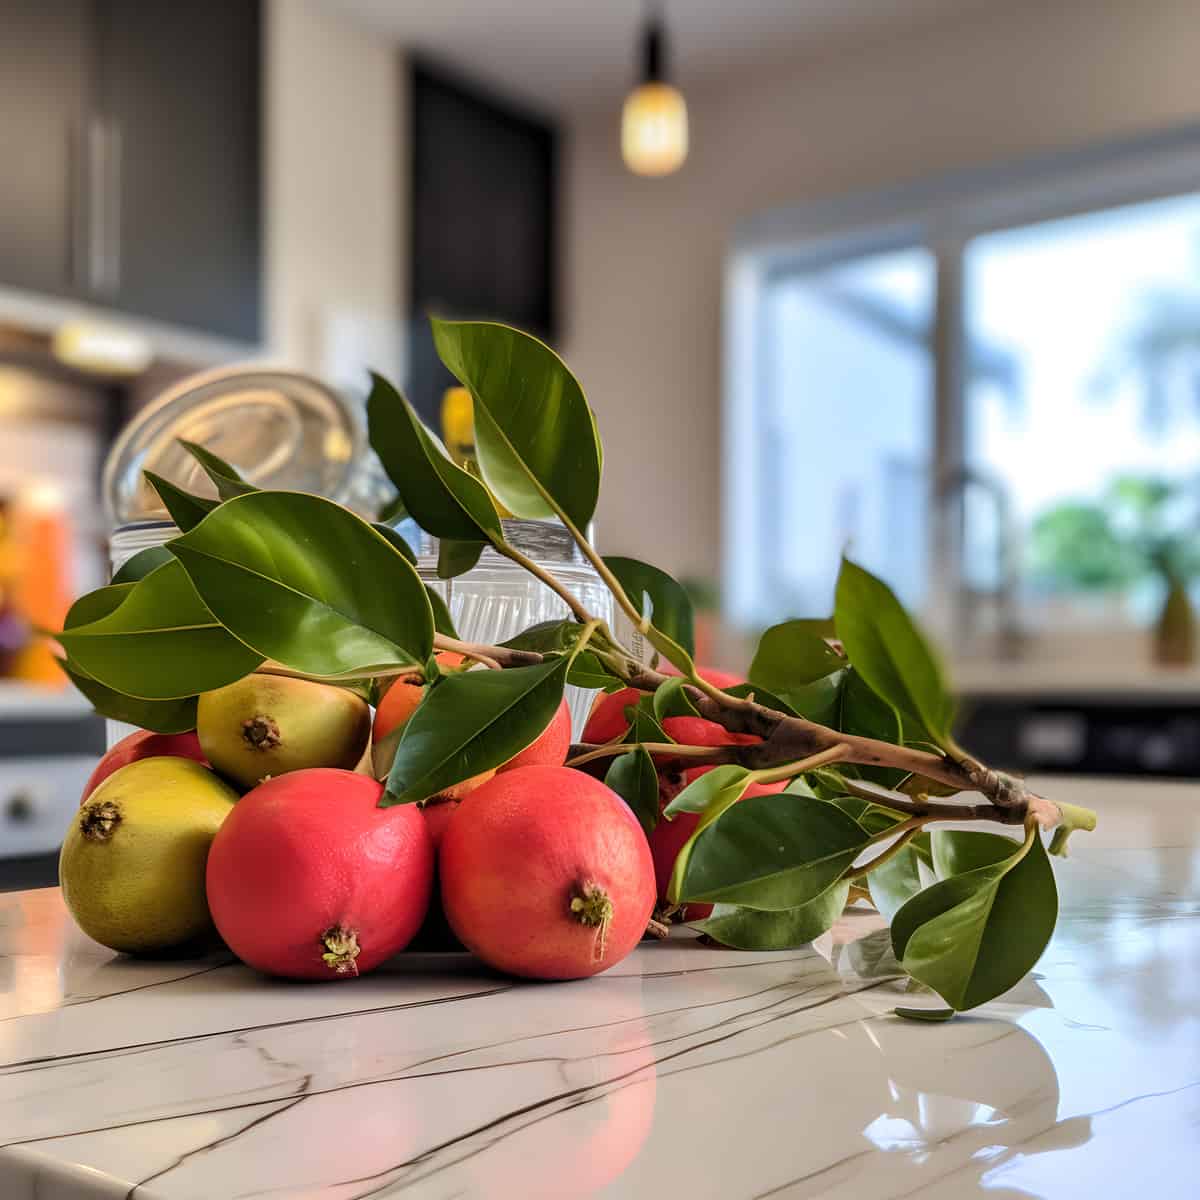 Ficus Parietalis Fruit on a kitchen counter